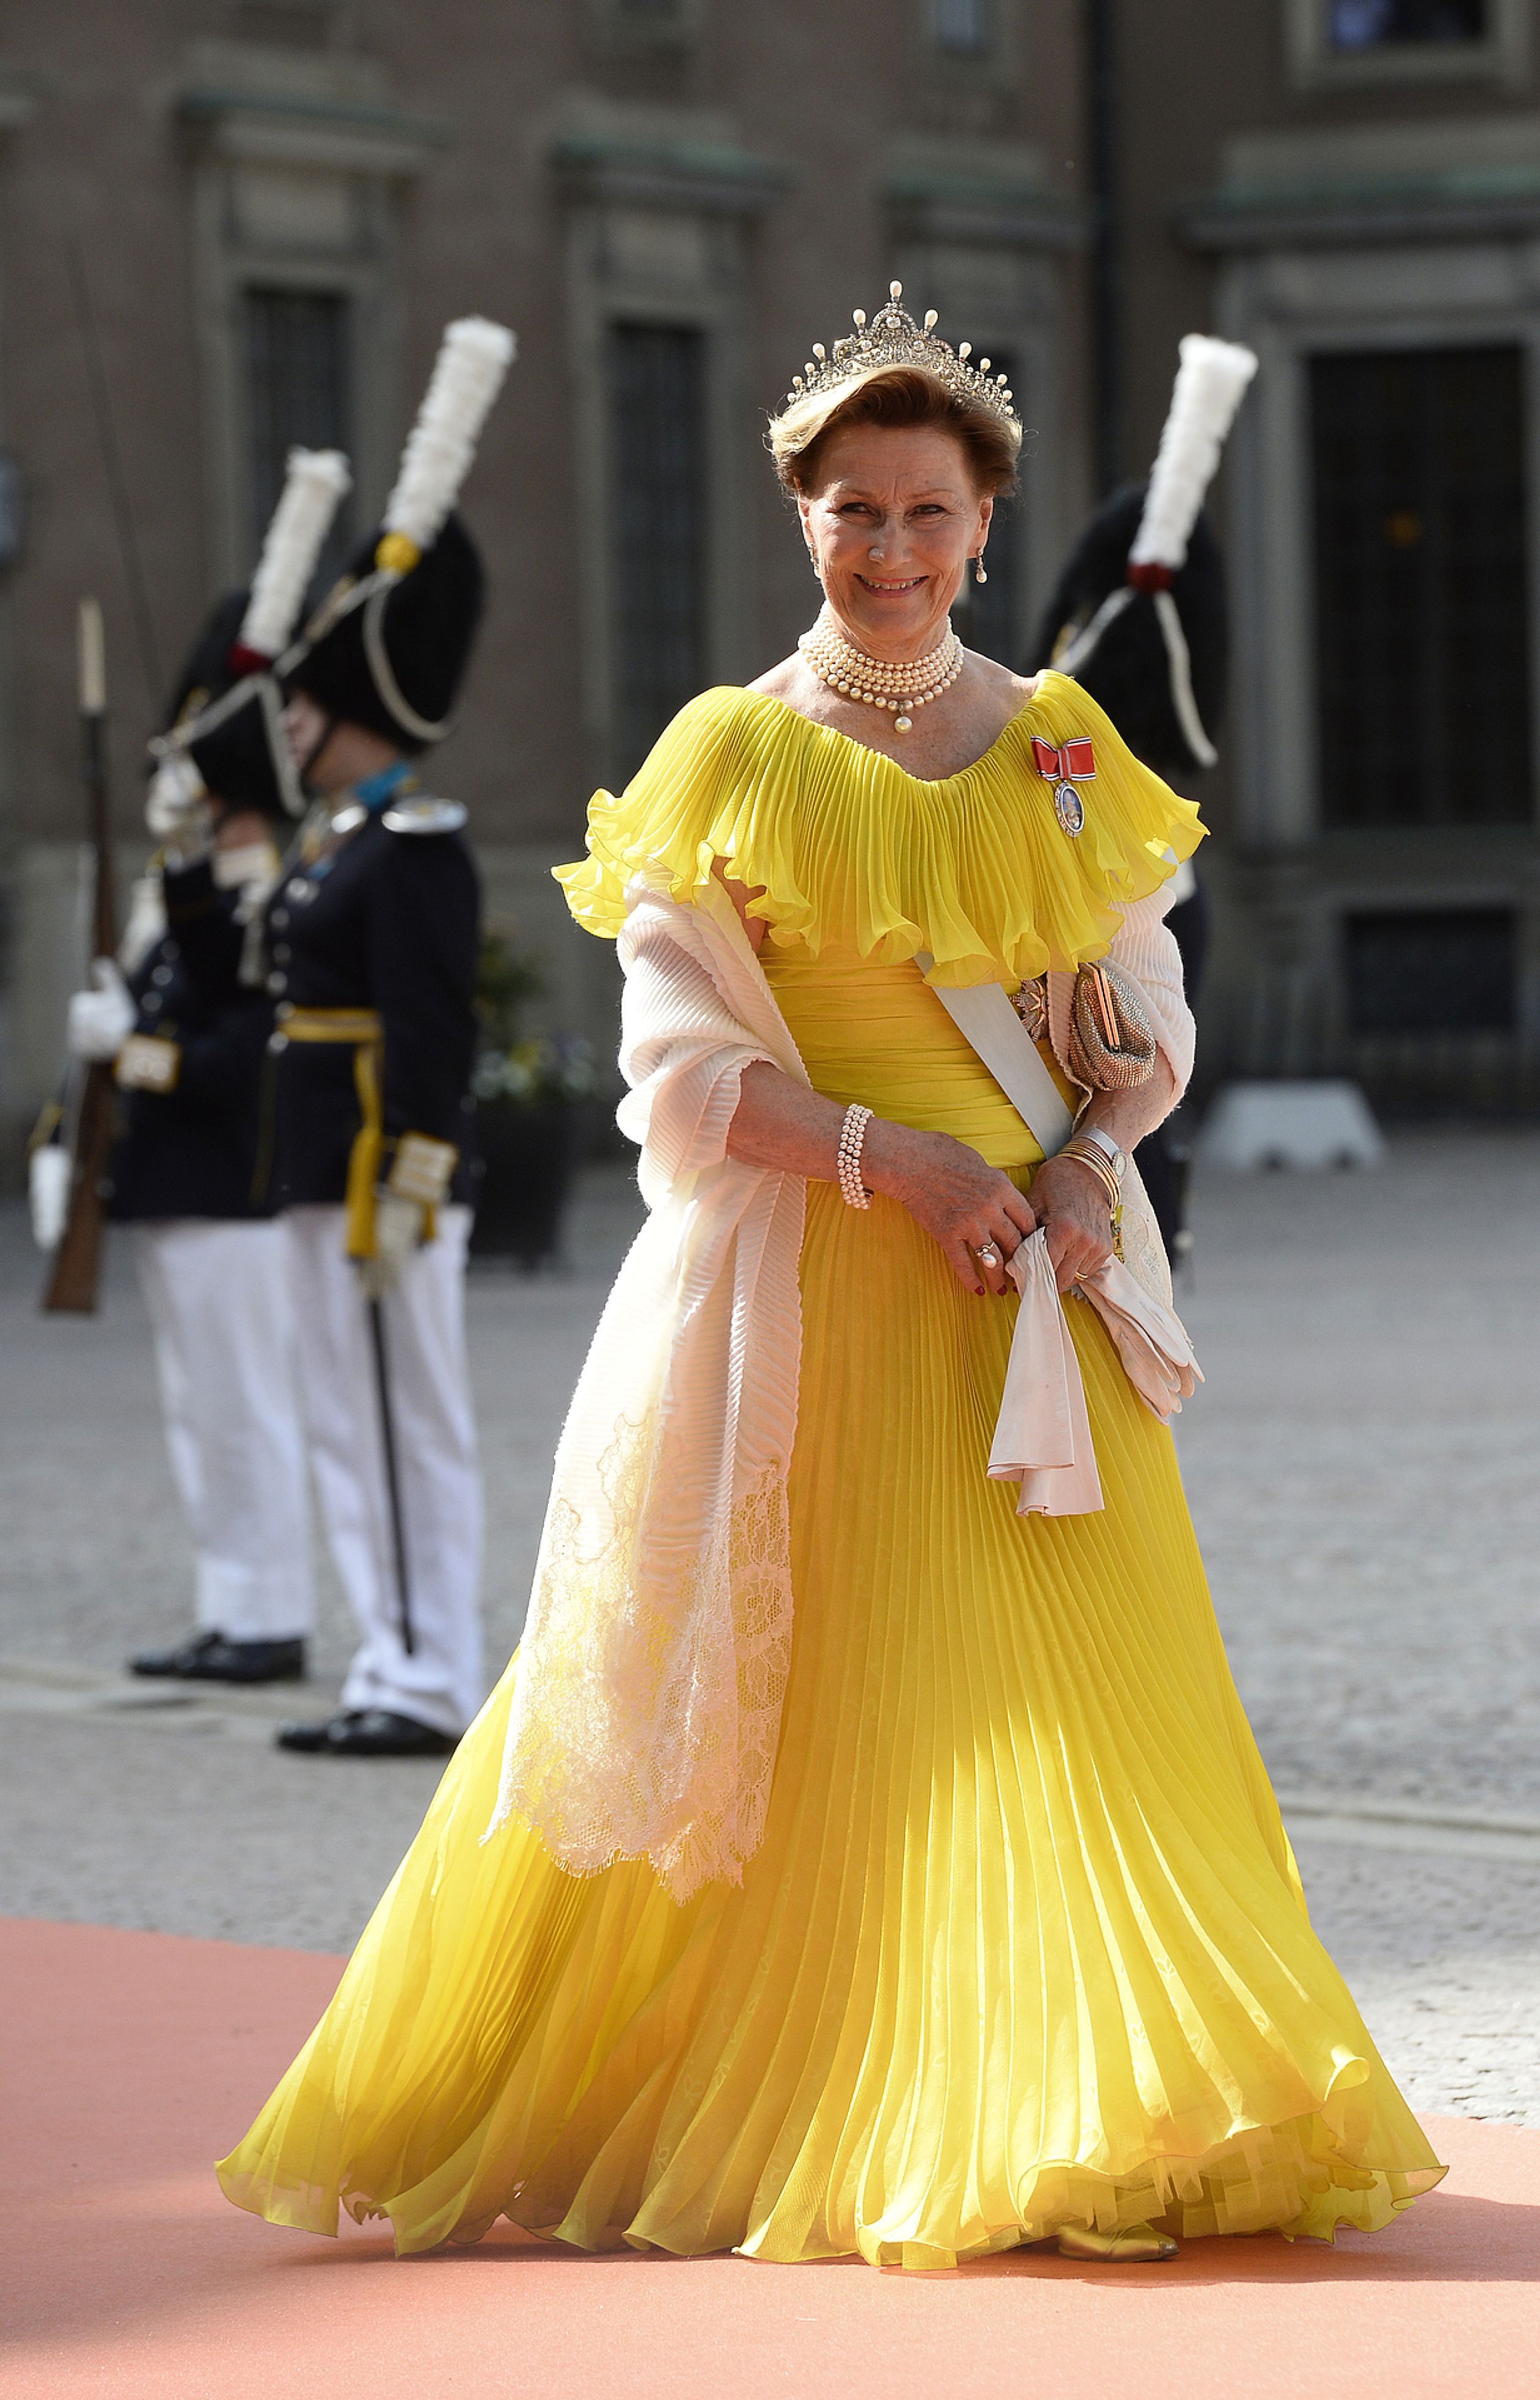 Koningin Sonja flaneerde in 2015 op het huwelijk van Carl Philip en Sofia in een knalgele galajurk.